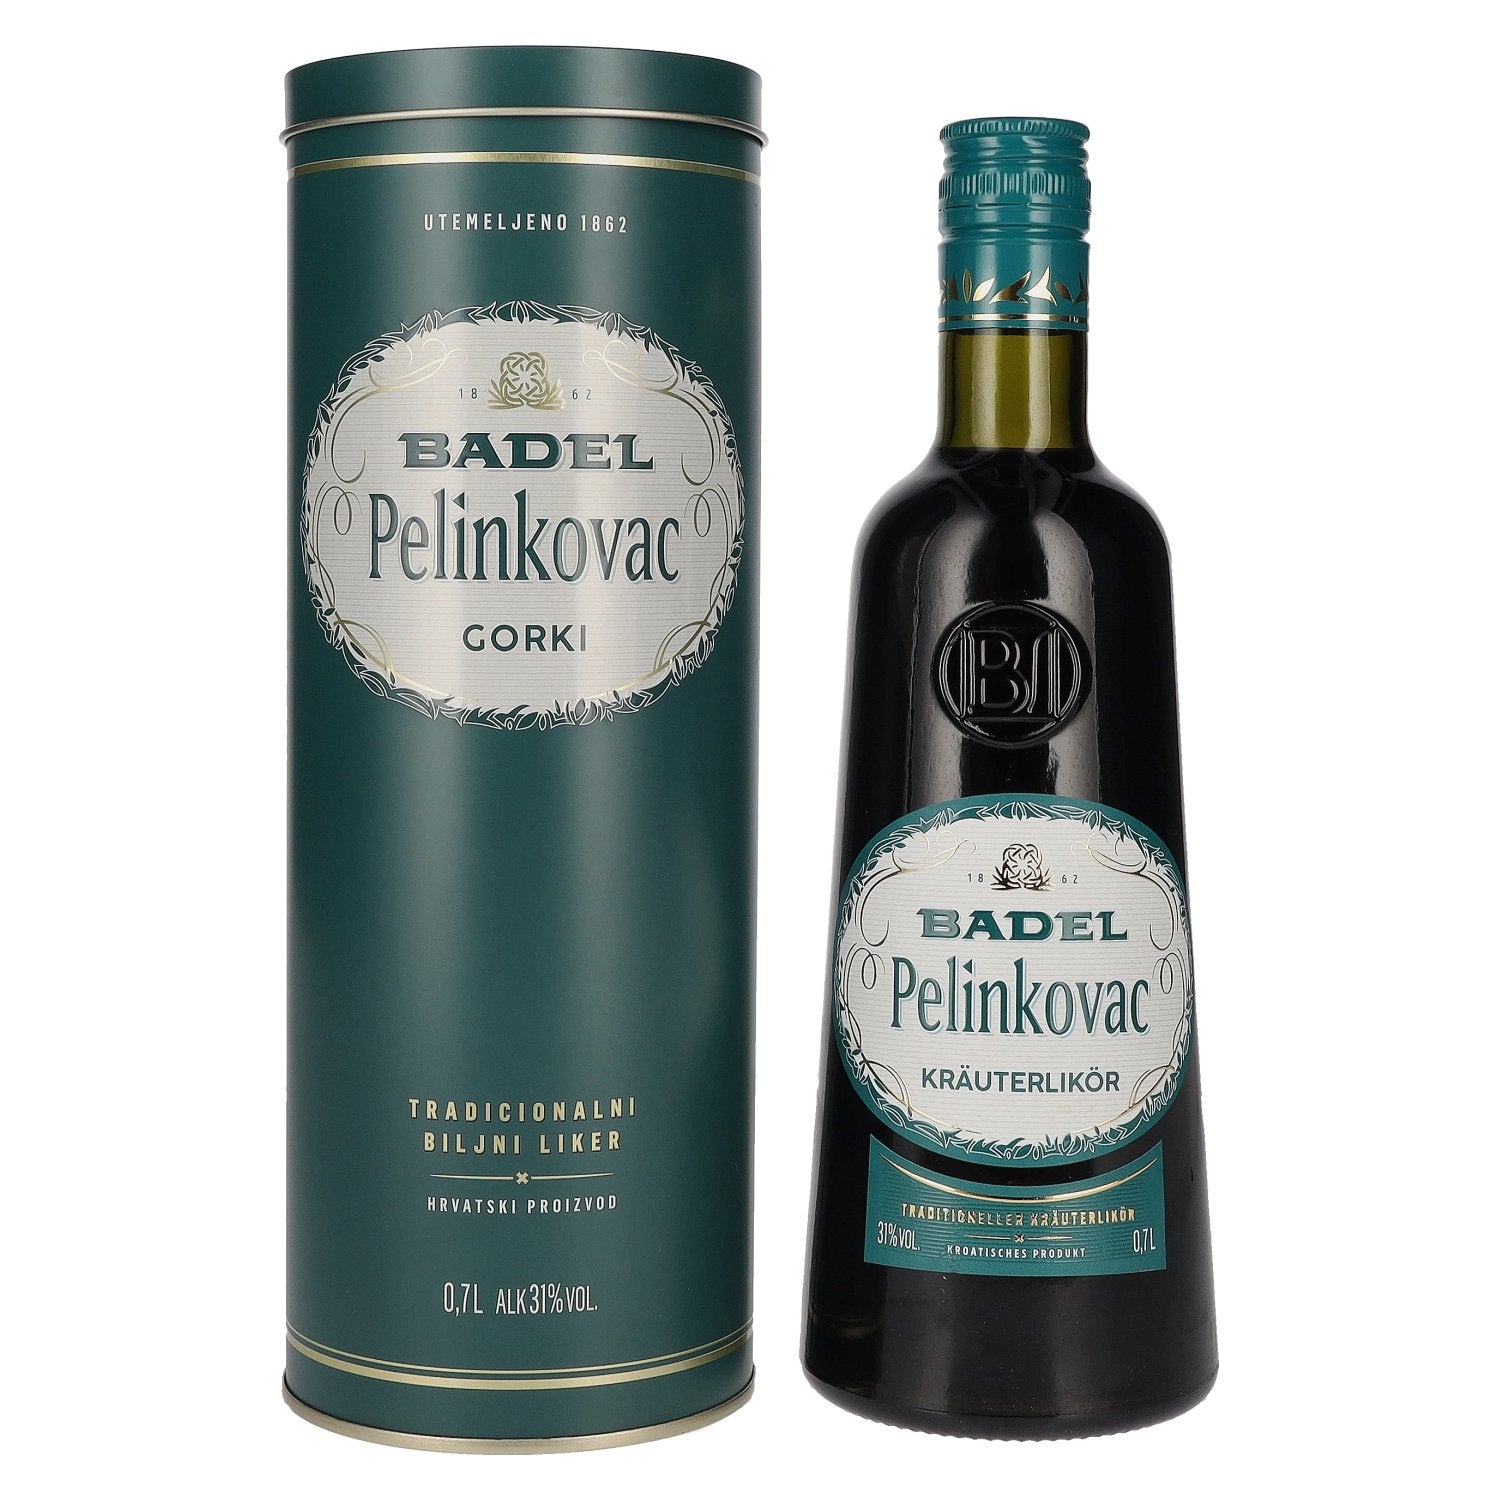 Badel Pelinkovac GORKI 31% Vol. 0,7l in Tinbox